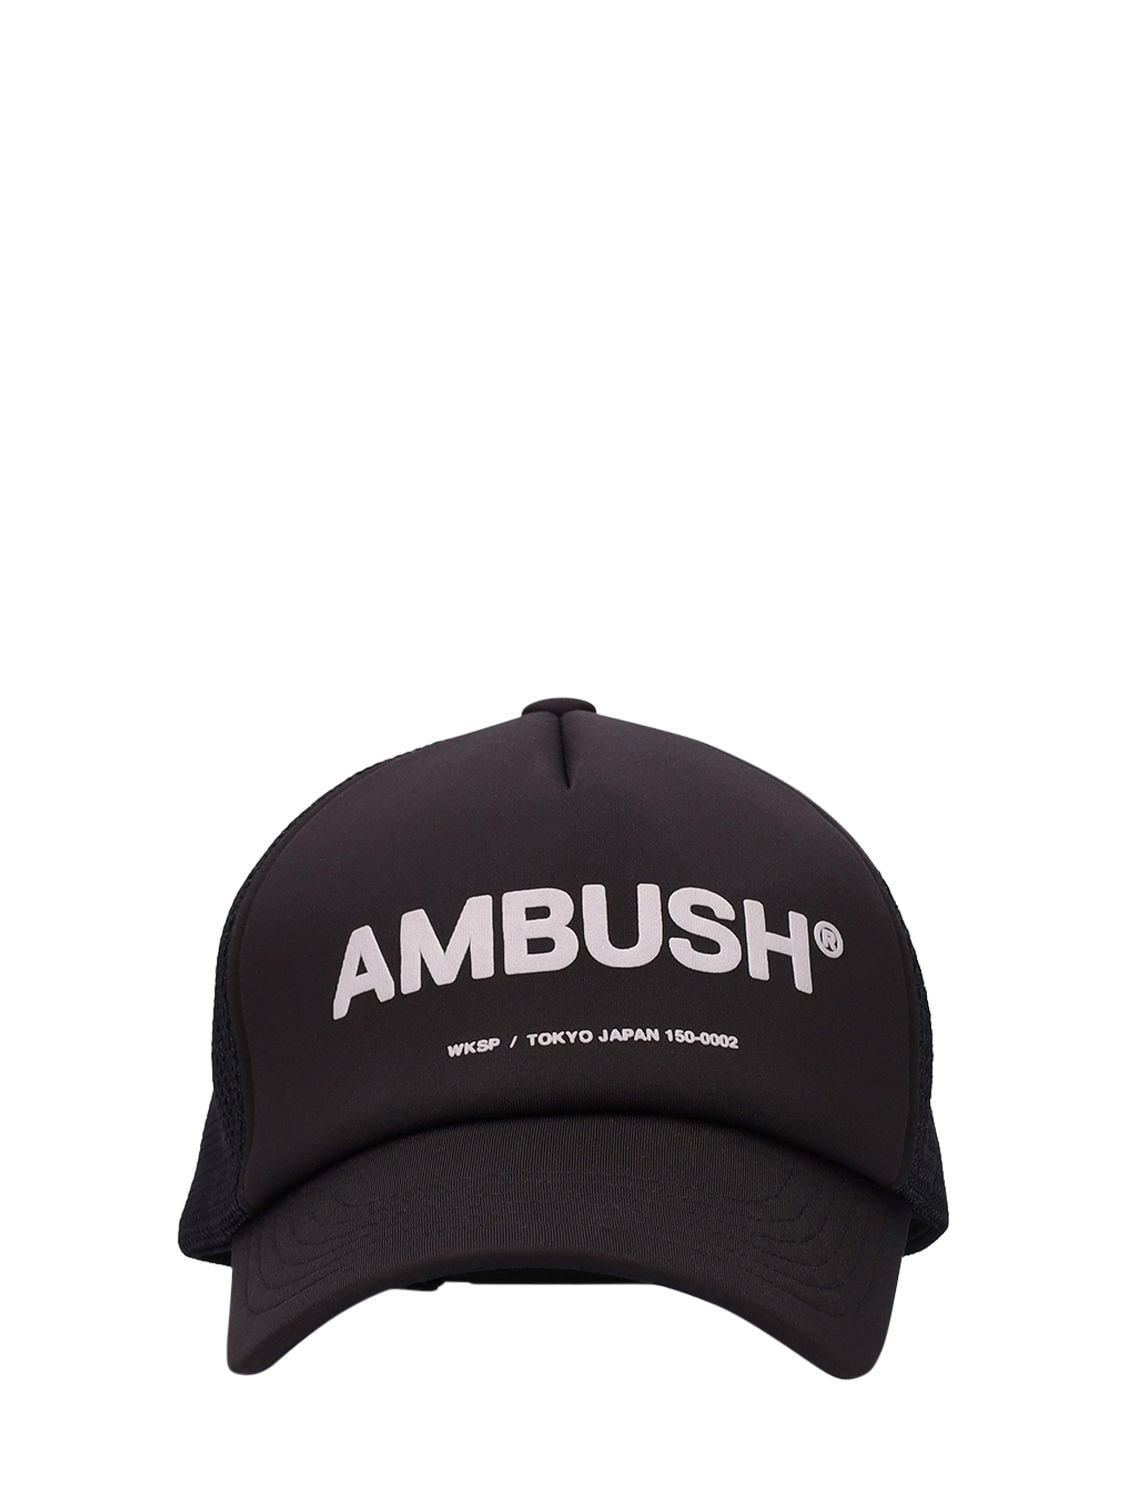 AMBUSH LOGO PRINTED TECHNO BASEBALL CAP